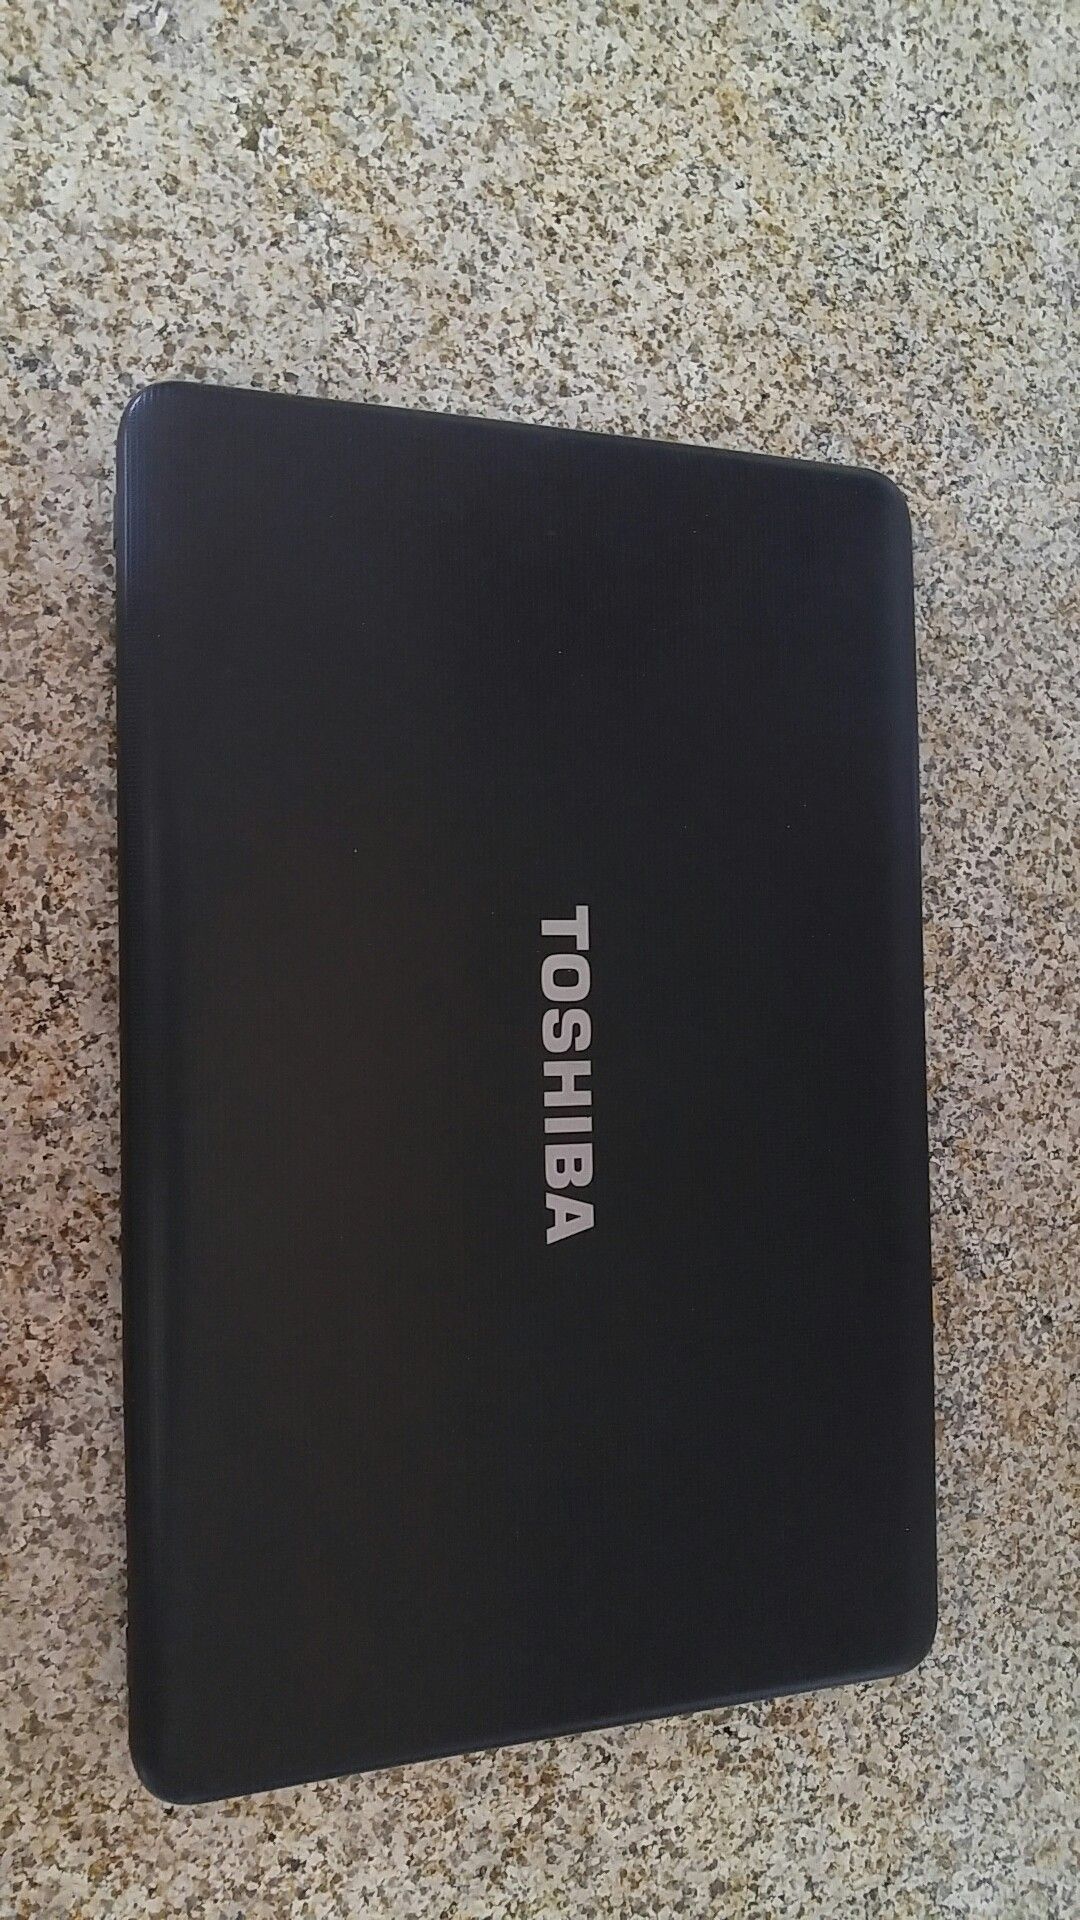 Toshiba Satellite 500gb laptop